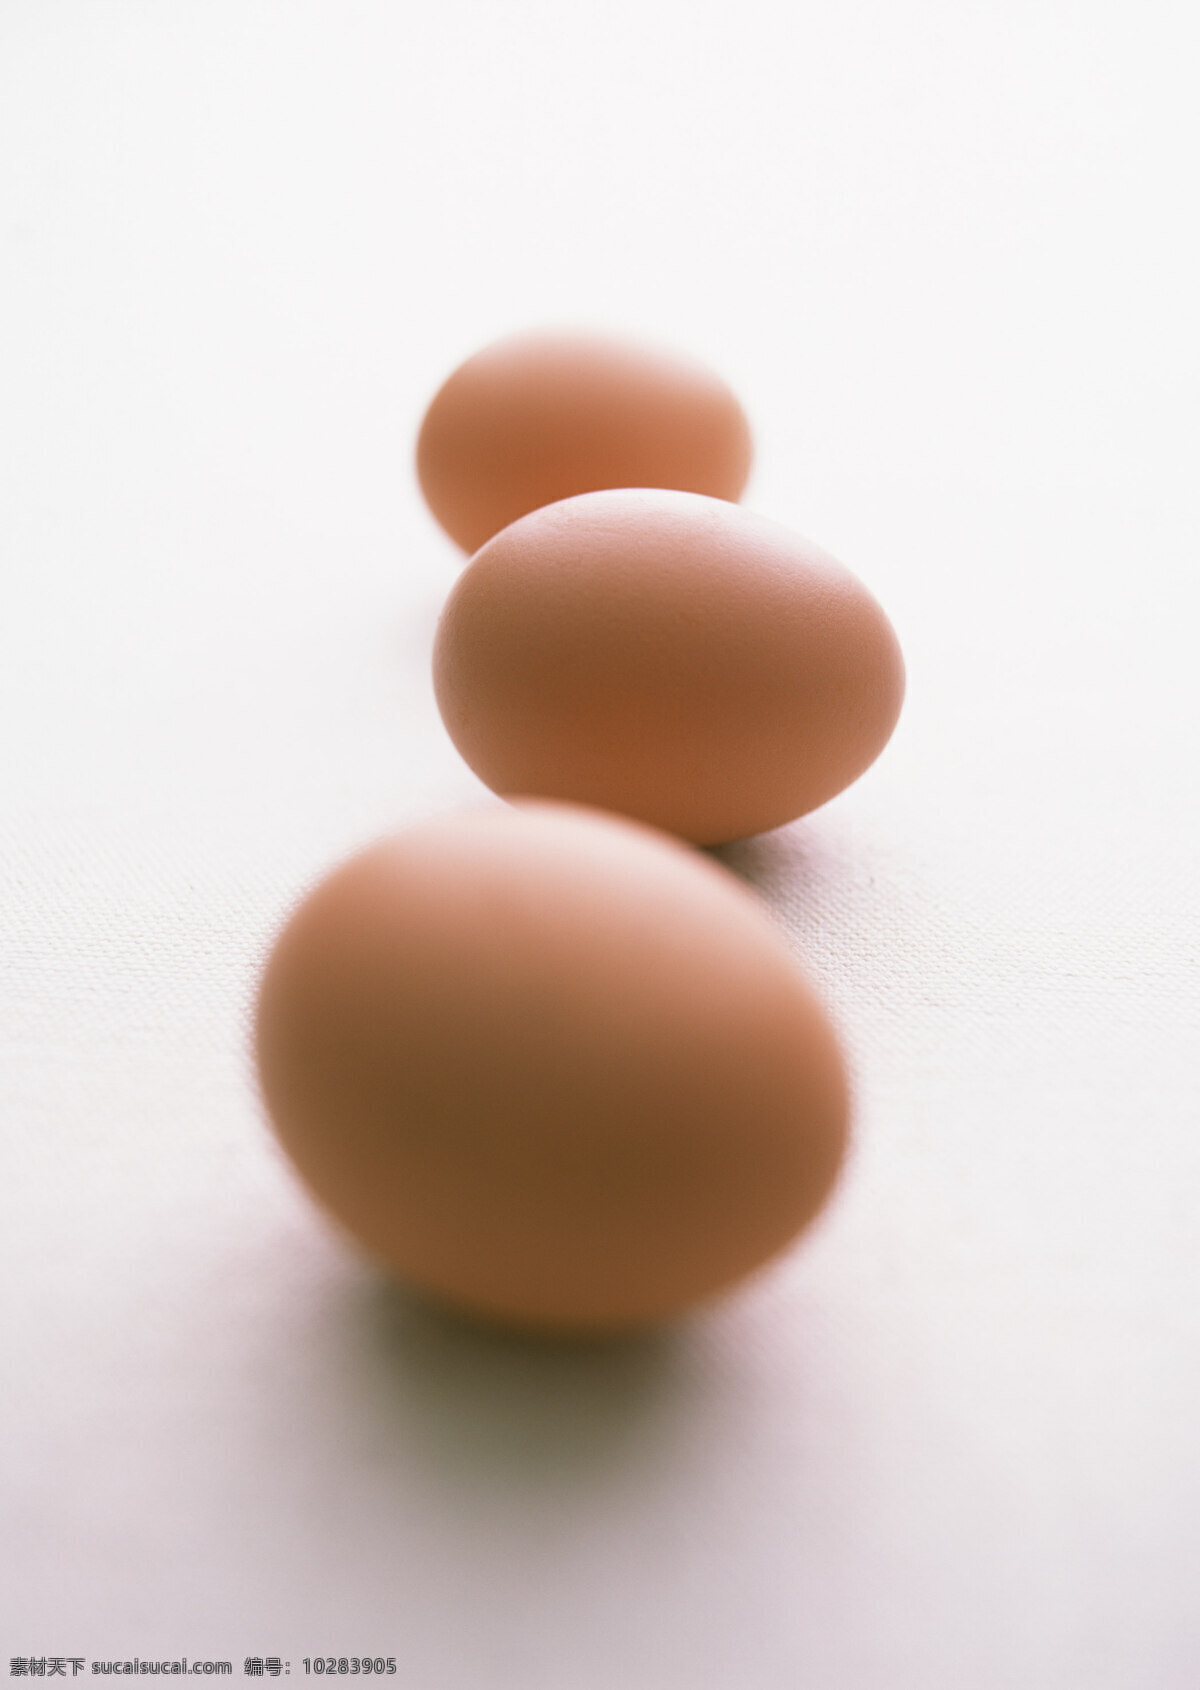 鸡蛋摄影 鸡蛋 蛋 食物原料 餐饮美食 食材原料 白色